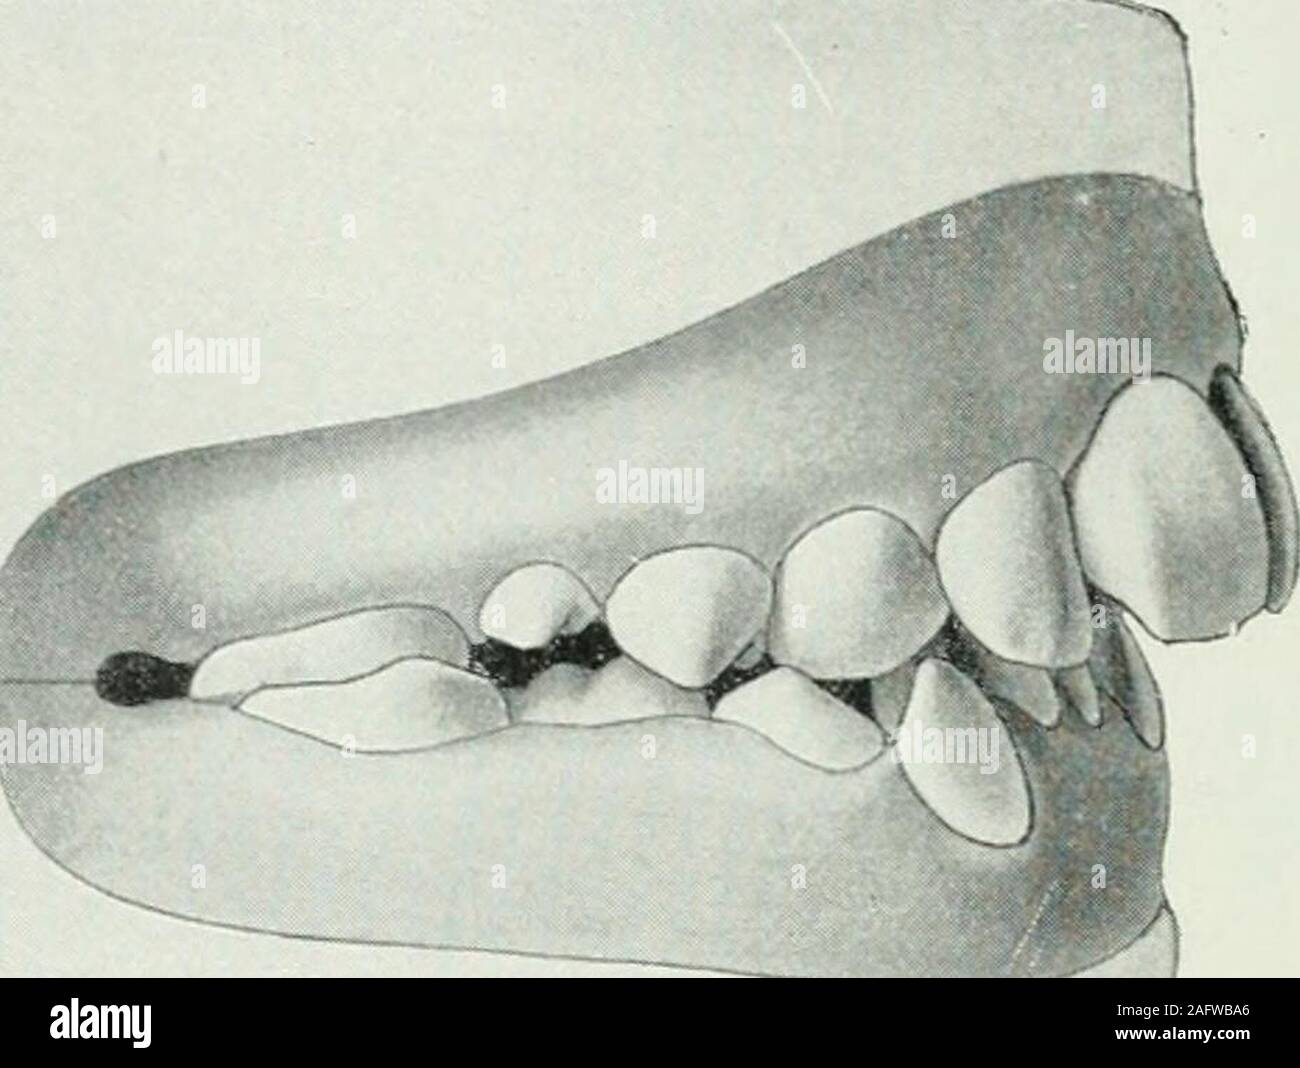 . Lehrbuch der orthodontie fur studierende und zahnartze mit enschluss der geschichte der orthodontie. Fig. 5.5. hinter die gleichnamigen unteren Zähne. Der Oberkieferbogenist zu klein, während der Unterkieferbogen übermäßig entwickeltist. Die Artikulation der Prämolaren und Molaren ist vielfachanormal, auch ist diese Deformität meist mit einer Verschiebungder Mittellinie verbunden. 76 II. Anomalien der Zähne. Für den nach innen geneigten Biß sind typisch die abge-flachten, eckigen Kieferbögen und das Aufbeißen der Schneide-. Fig. 56. flächen der oberen Frontzähne auf die labialen Halspartien Stock Photo